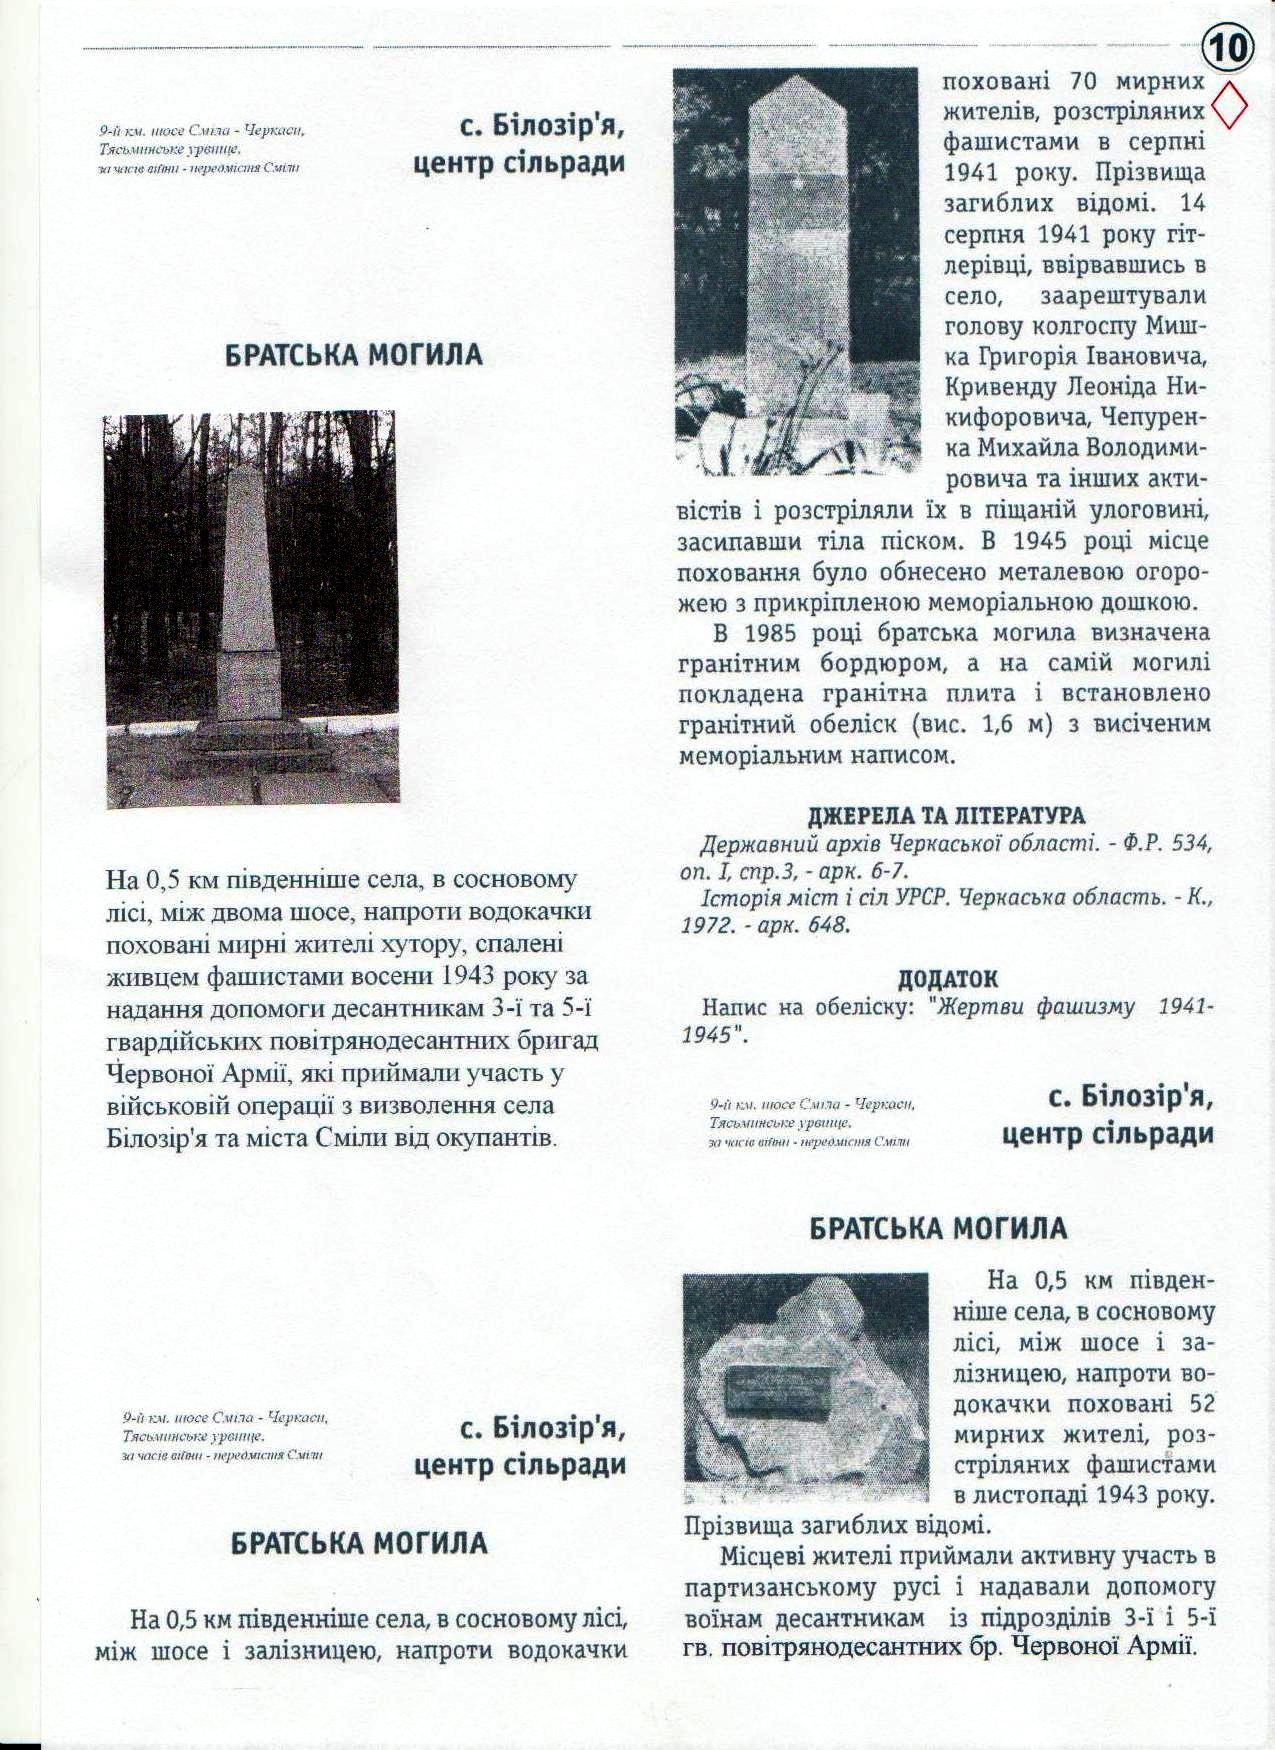 Братская могила 52 мирных жителей, расстрелянных в 1943 г.